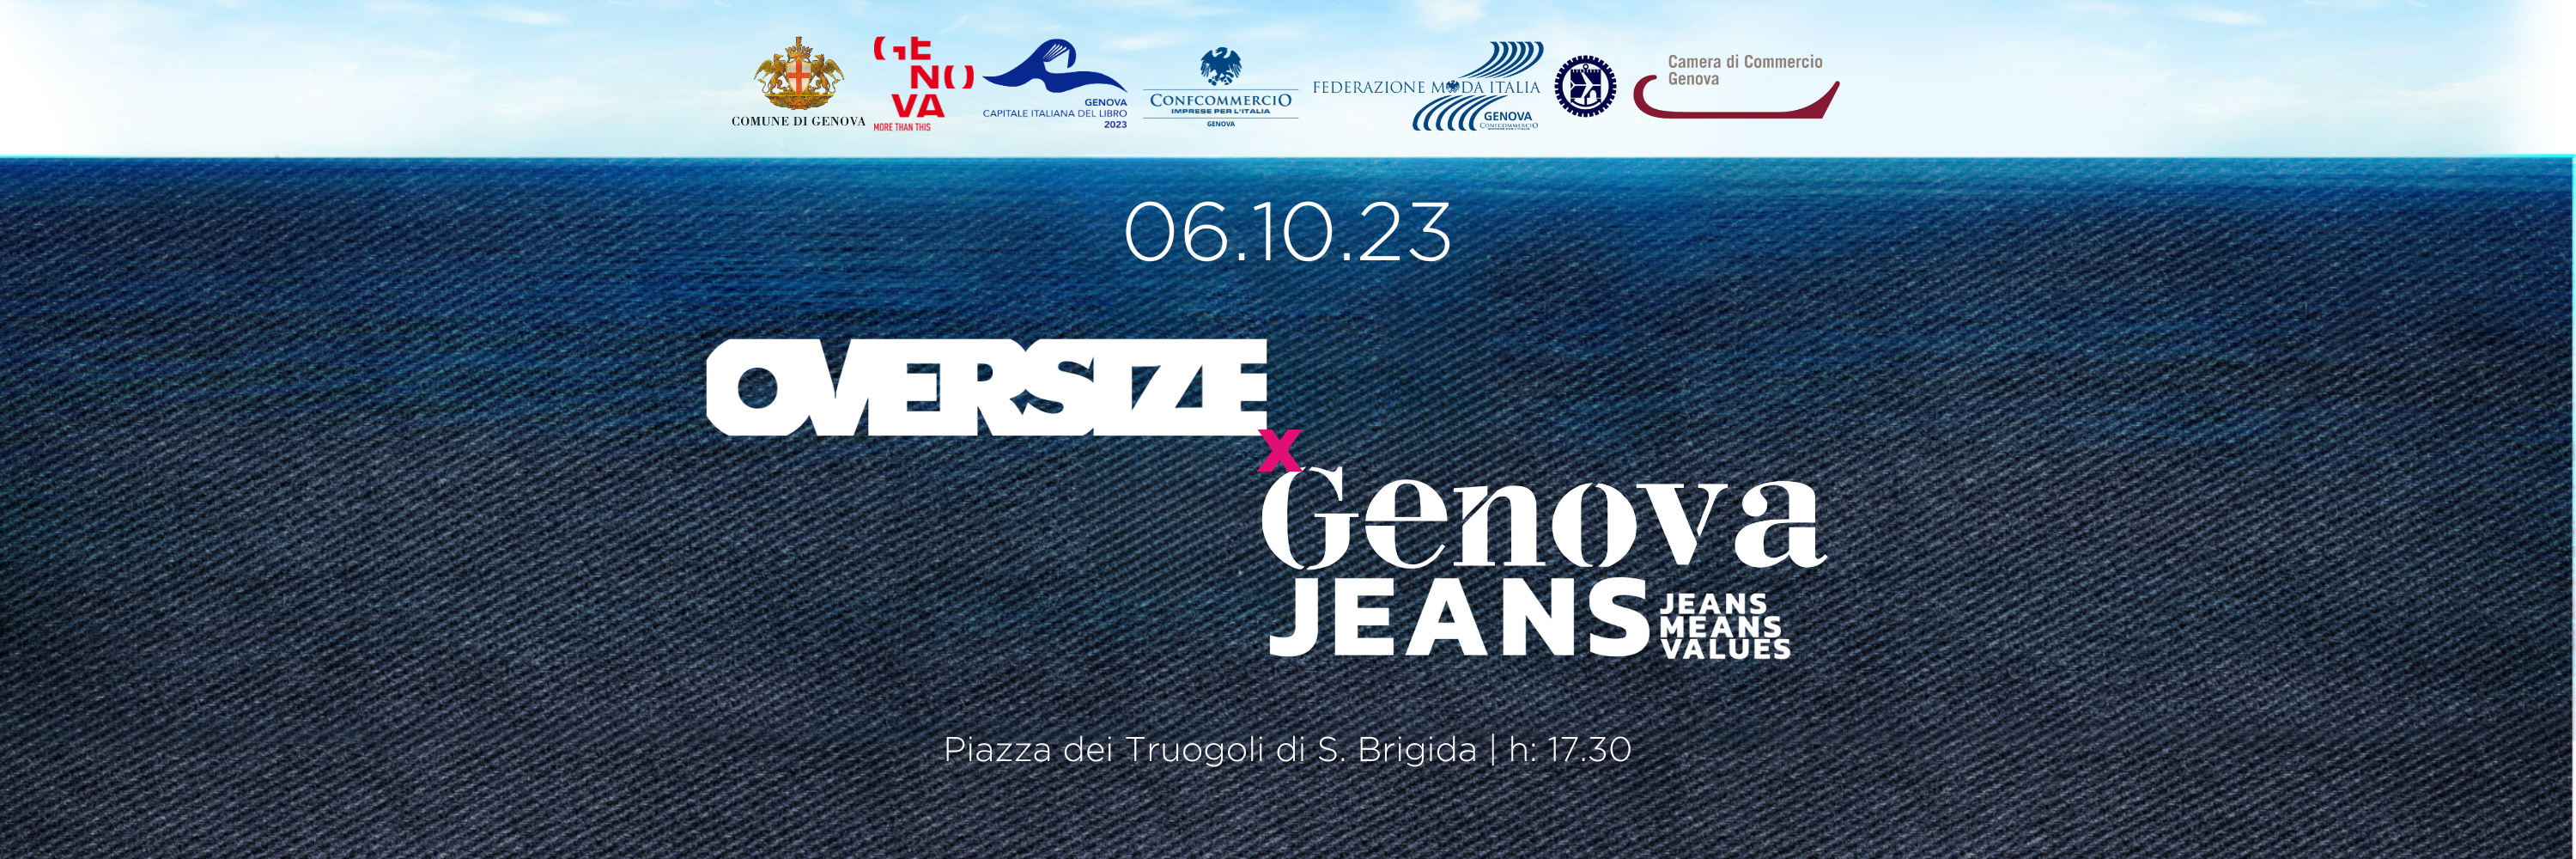 OVERSIZEit x Genova Jeans - Página frontal